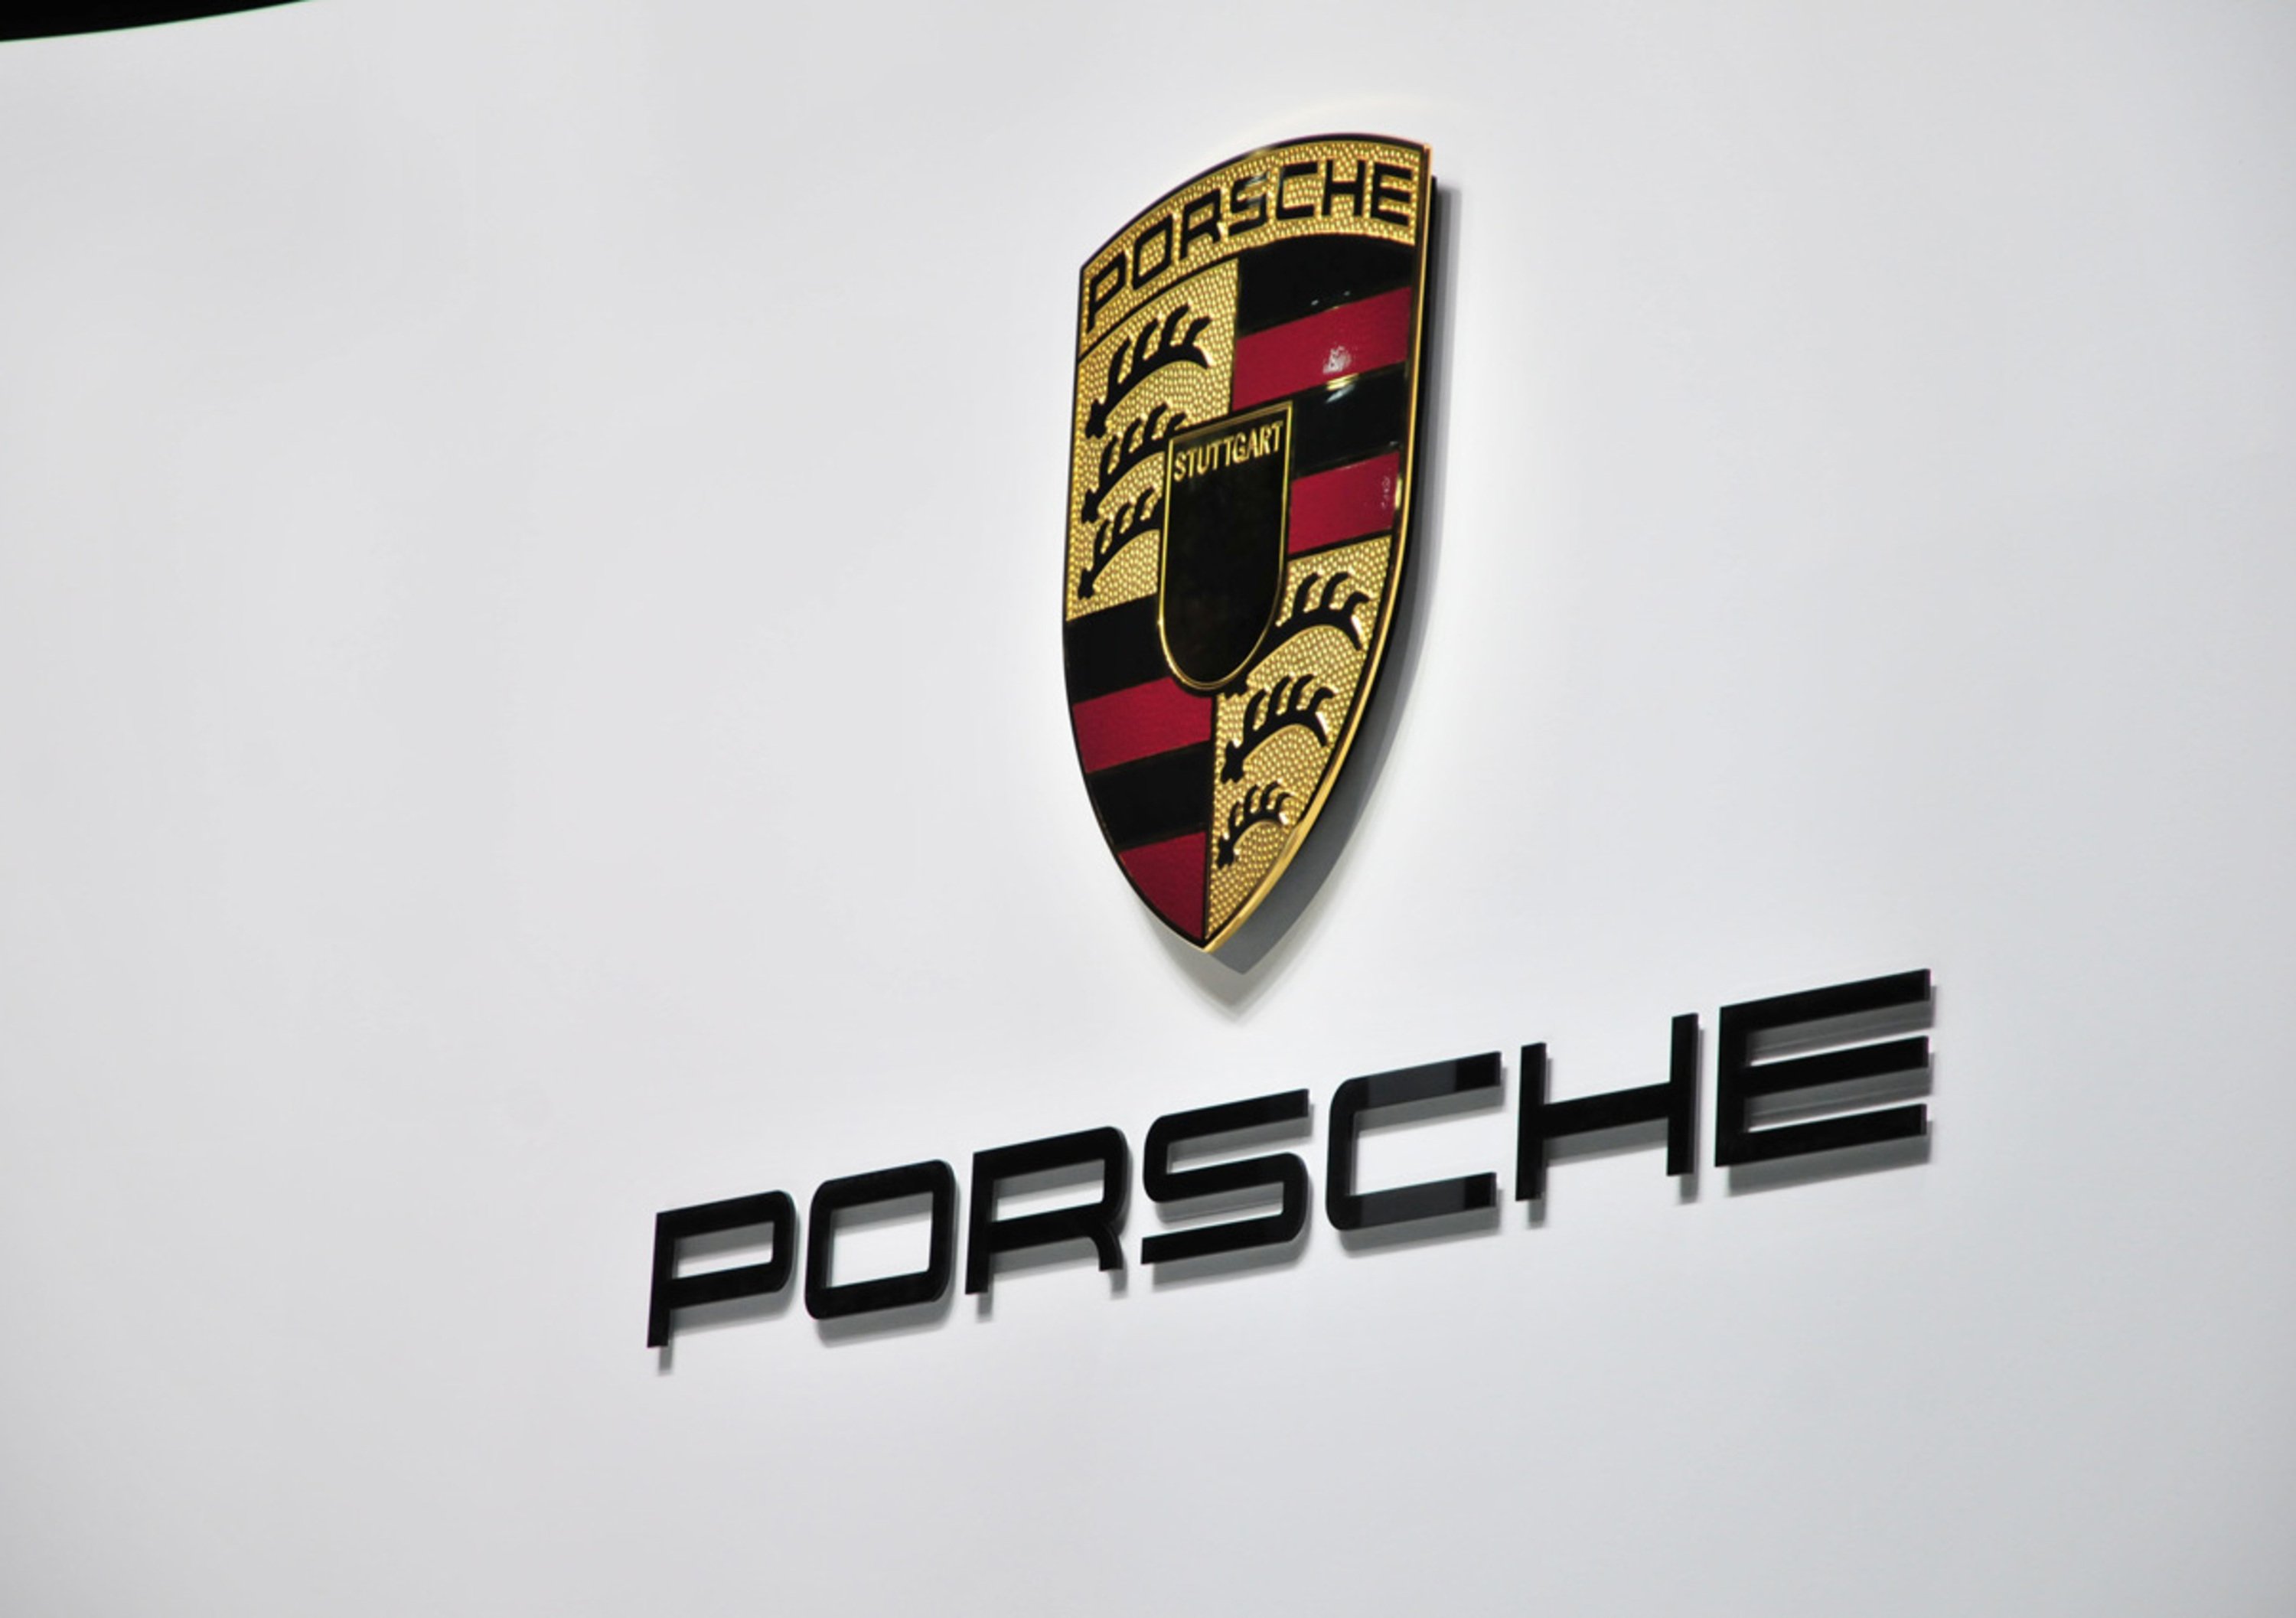 Porsche chiude il 2011 con un  utile netto di 1.46 miliardi di euro